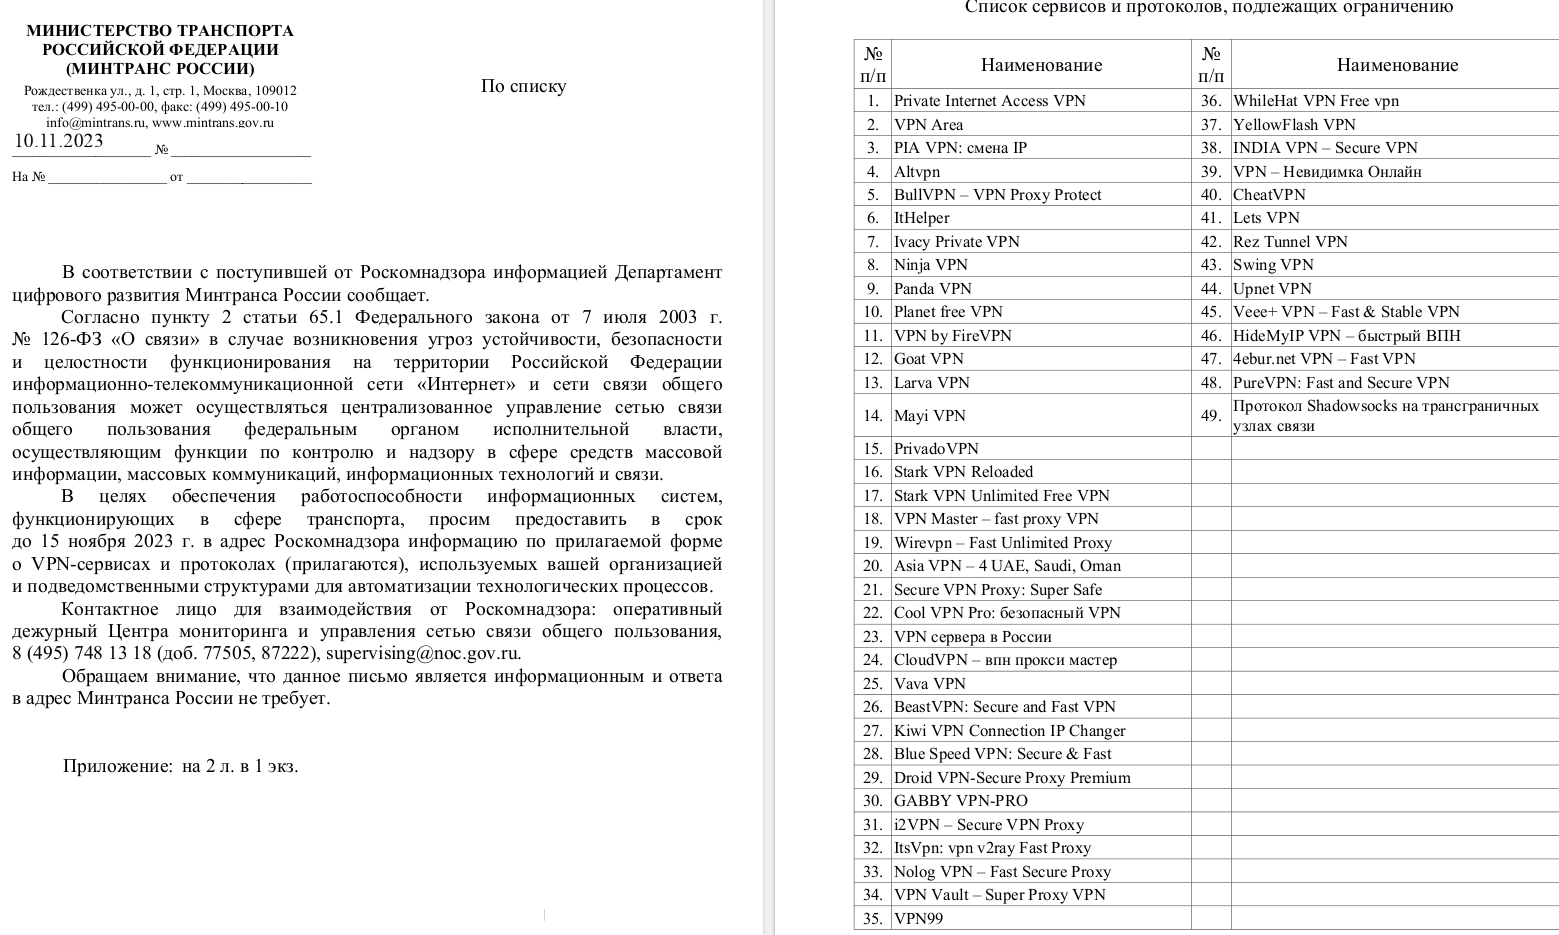 список заблокированных vpn в россии